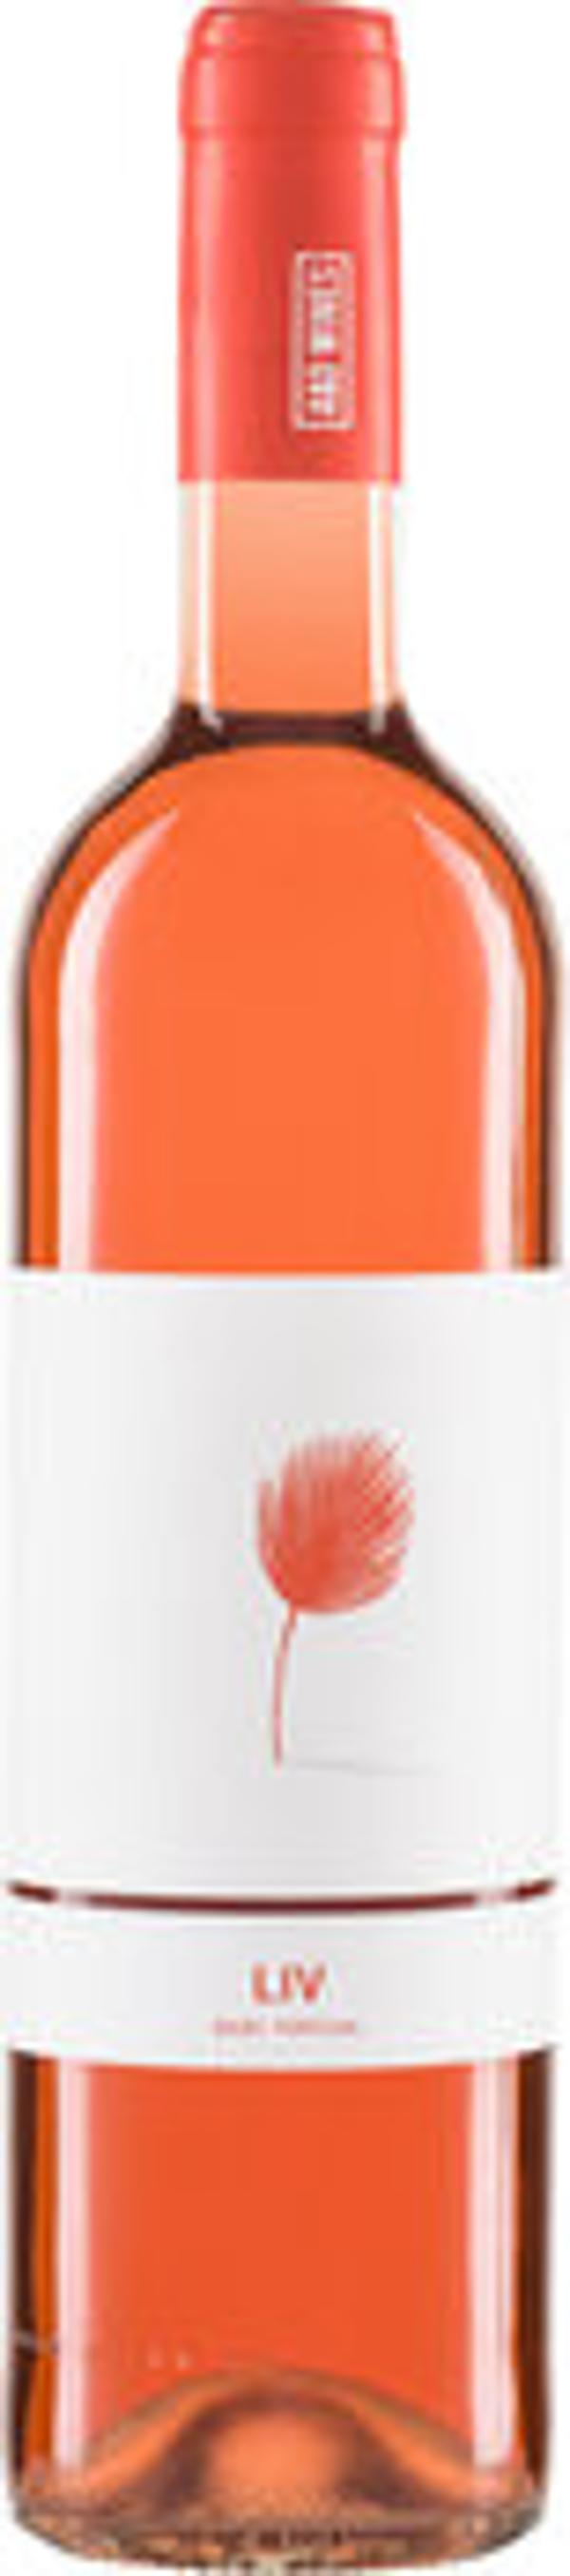 Produktfoto zu Kiste Vinho Verde Rosé 'Liv' DOC 6*0,75l